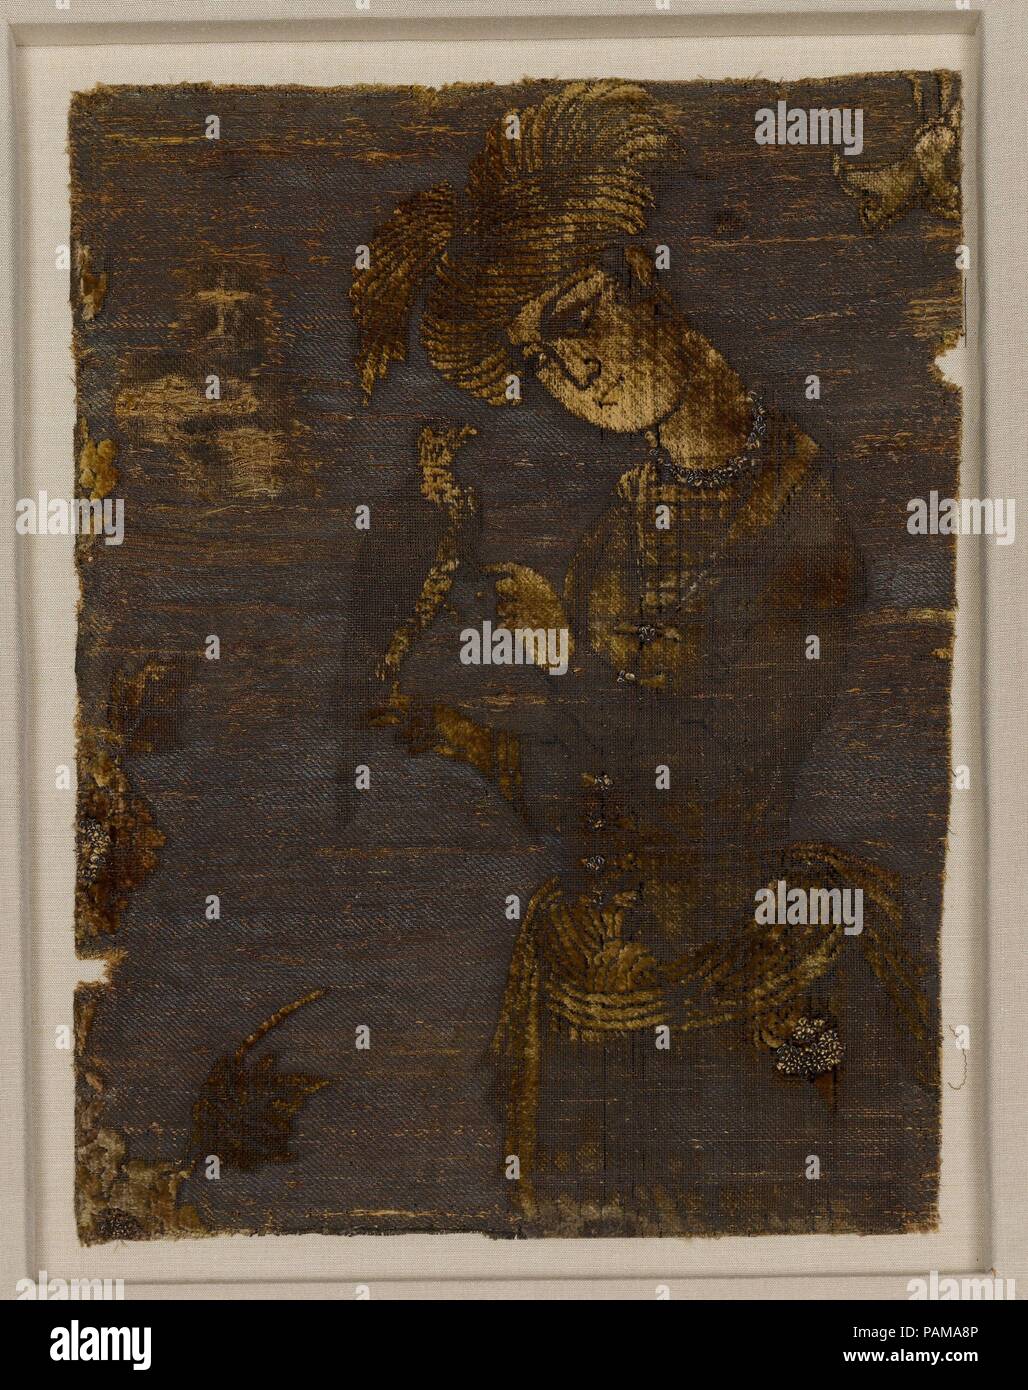 Ein junger Mann an einen Falken. Abmessungen: Textil: L. 11 1/2 in. (29,2 cm) W. 8 1/2 in. (21,6 cm): L 16 cm. (41 cm) W. 13 1/4 in. (33,7 cm) D.1 1/2 in. (3,8 cm). Datum: Anfang des 17. Jahrhunderts. Die ursprüngliche Breite dieses Textil würde mindestens vier Zahlen Rücken-an-Rücken spiegelbildlich enthalten haben. Ein junger Mann, der in einem voluminösen Turban und kurze Jacke gekleidet, kümmert sich um ein Falke. Üppige Wirkung und zusätzliche Textur sind durch die Einbeziehung der Folie erreicht - Seide Loops in ausgewählten Bereichen wie z. B. der Bund der falconer gewickelt. Falknerei war eine fürstliche Sport, eines von mehreren Stockfoto